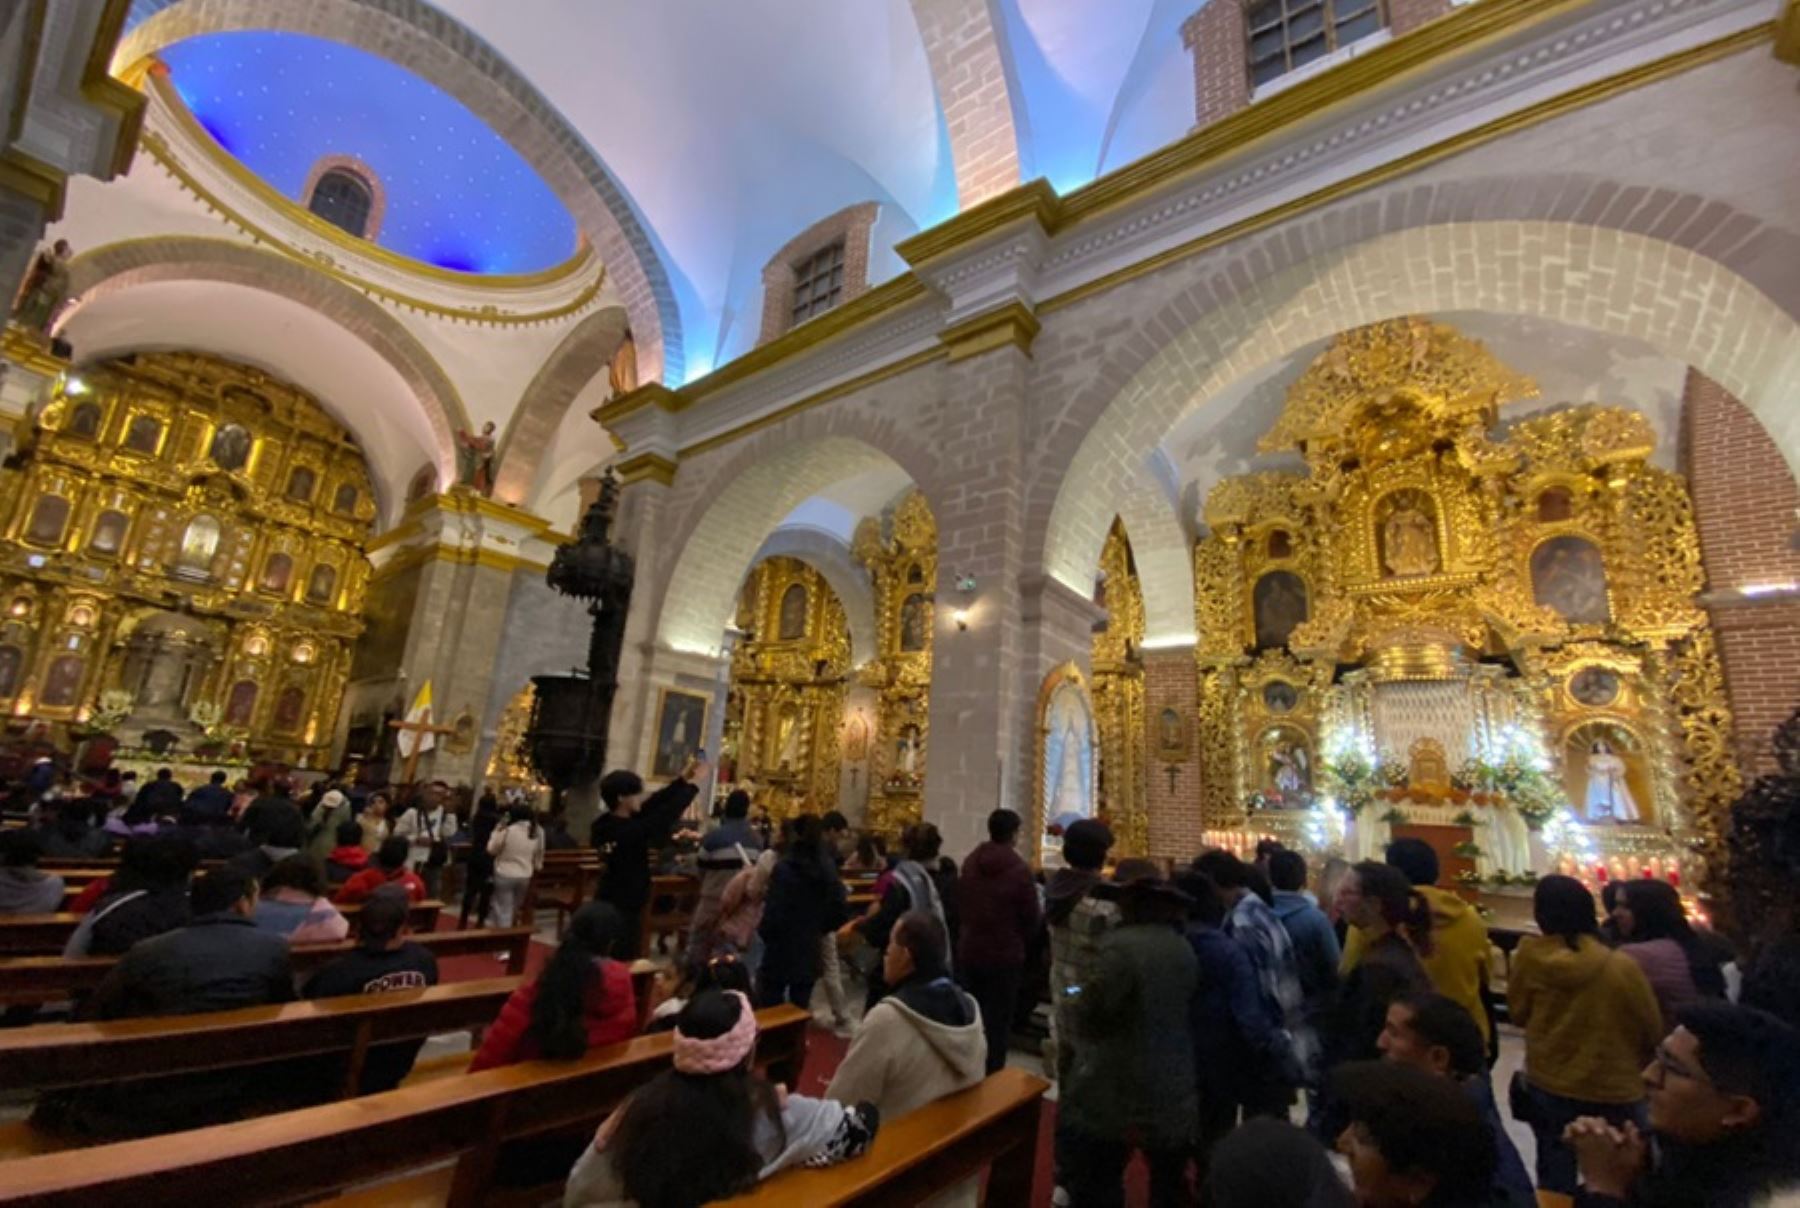 En Jueves Santo, miles de fieles católicos recorrieron por la tarde las 33 iglesias de la ciudad de Ayacucho para cumplir con la costumbre religiosa de visitar los siete templos y conmemorar el Vía Crucis de Jesús antes de su crucifixión y posterior resurrección.